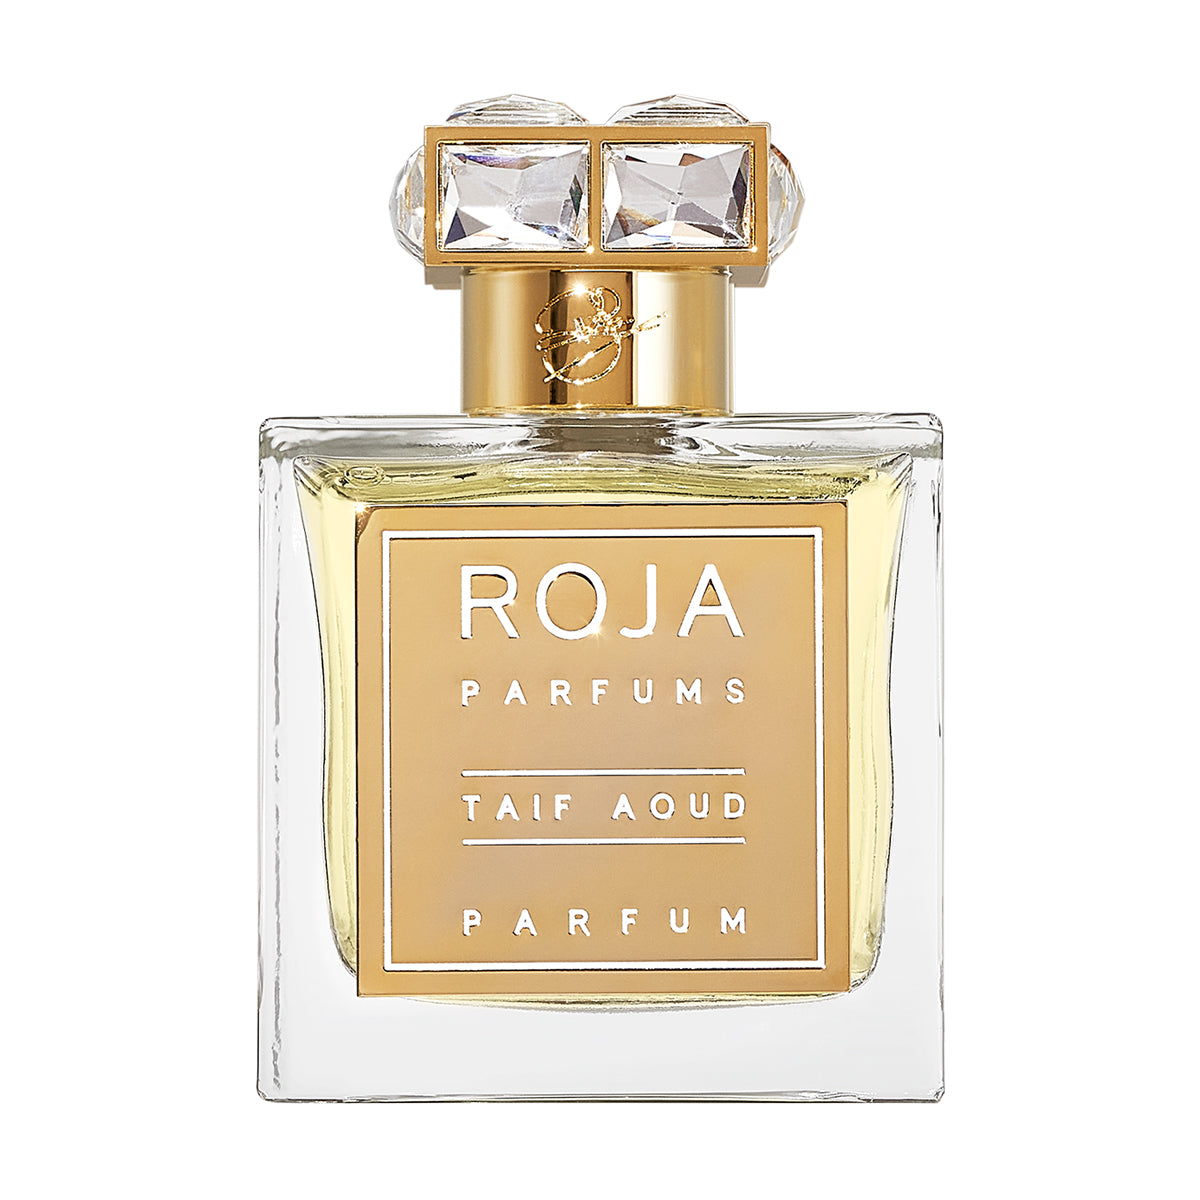 Taif Aoud - Roja Parfums - Parfum 100 ml